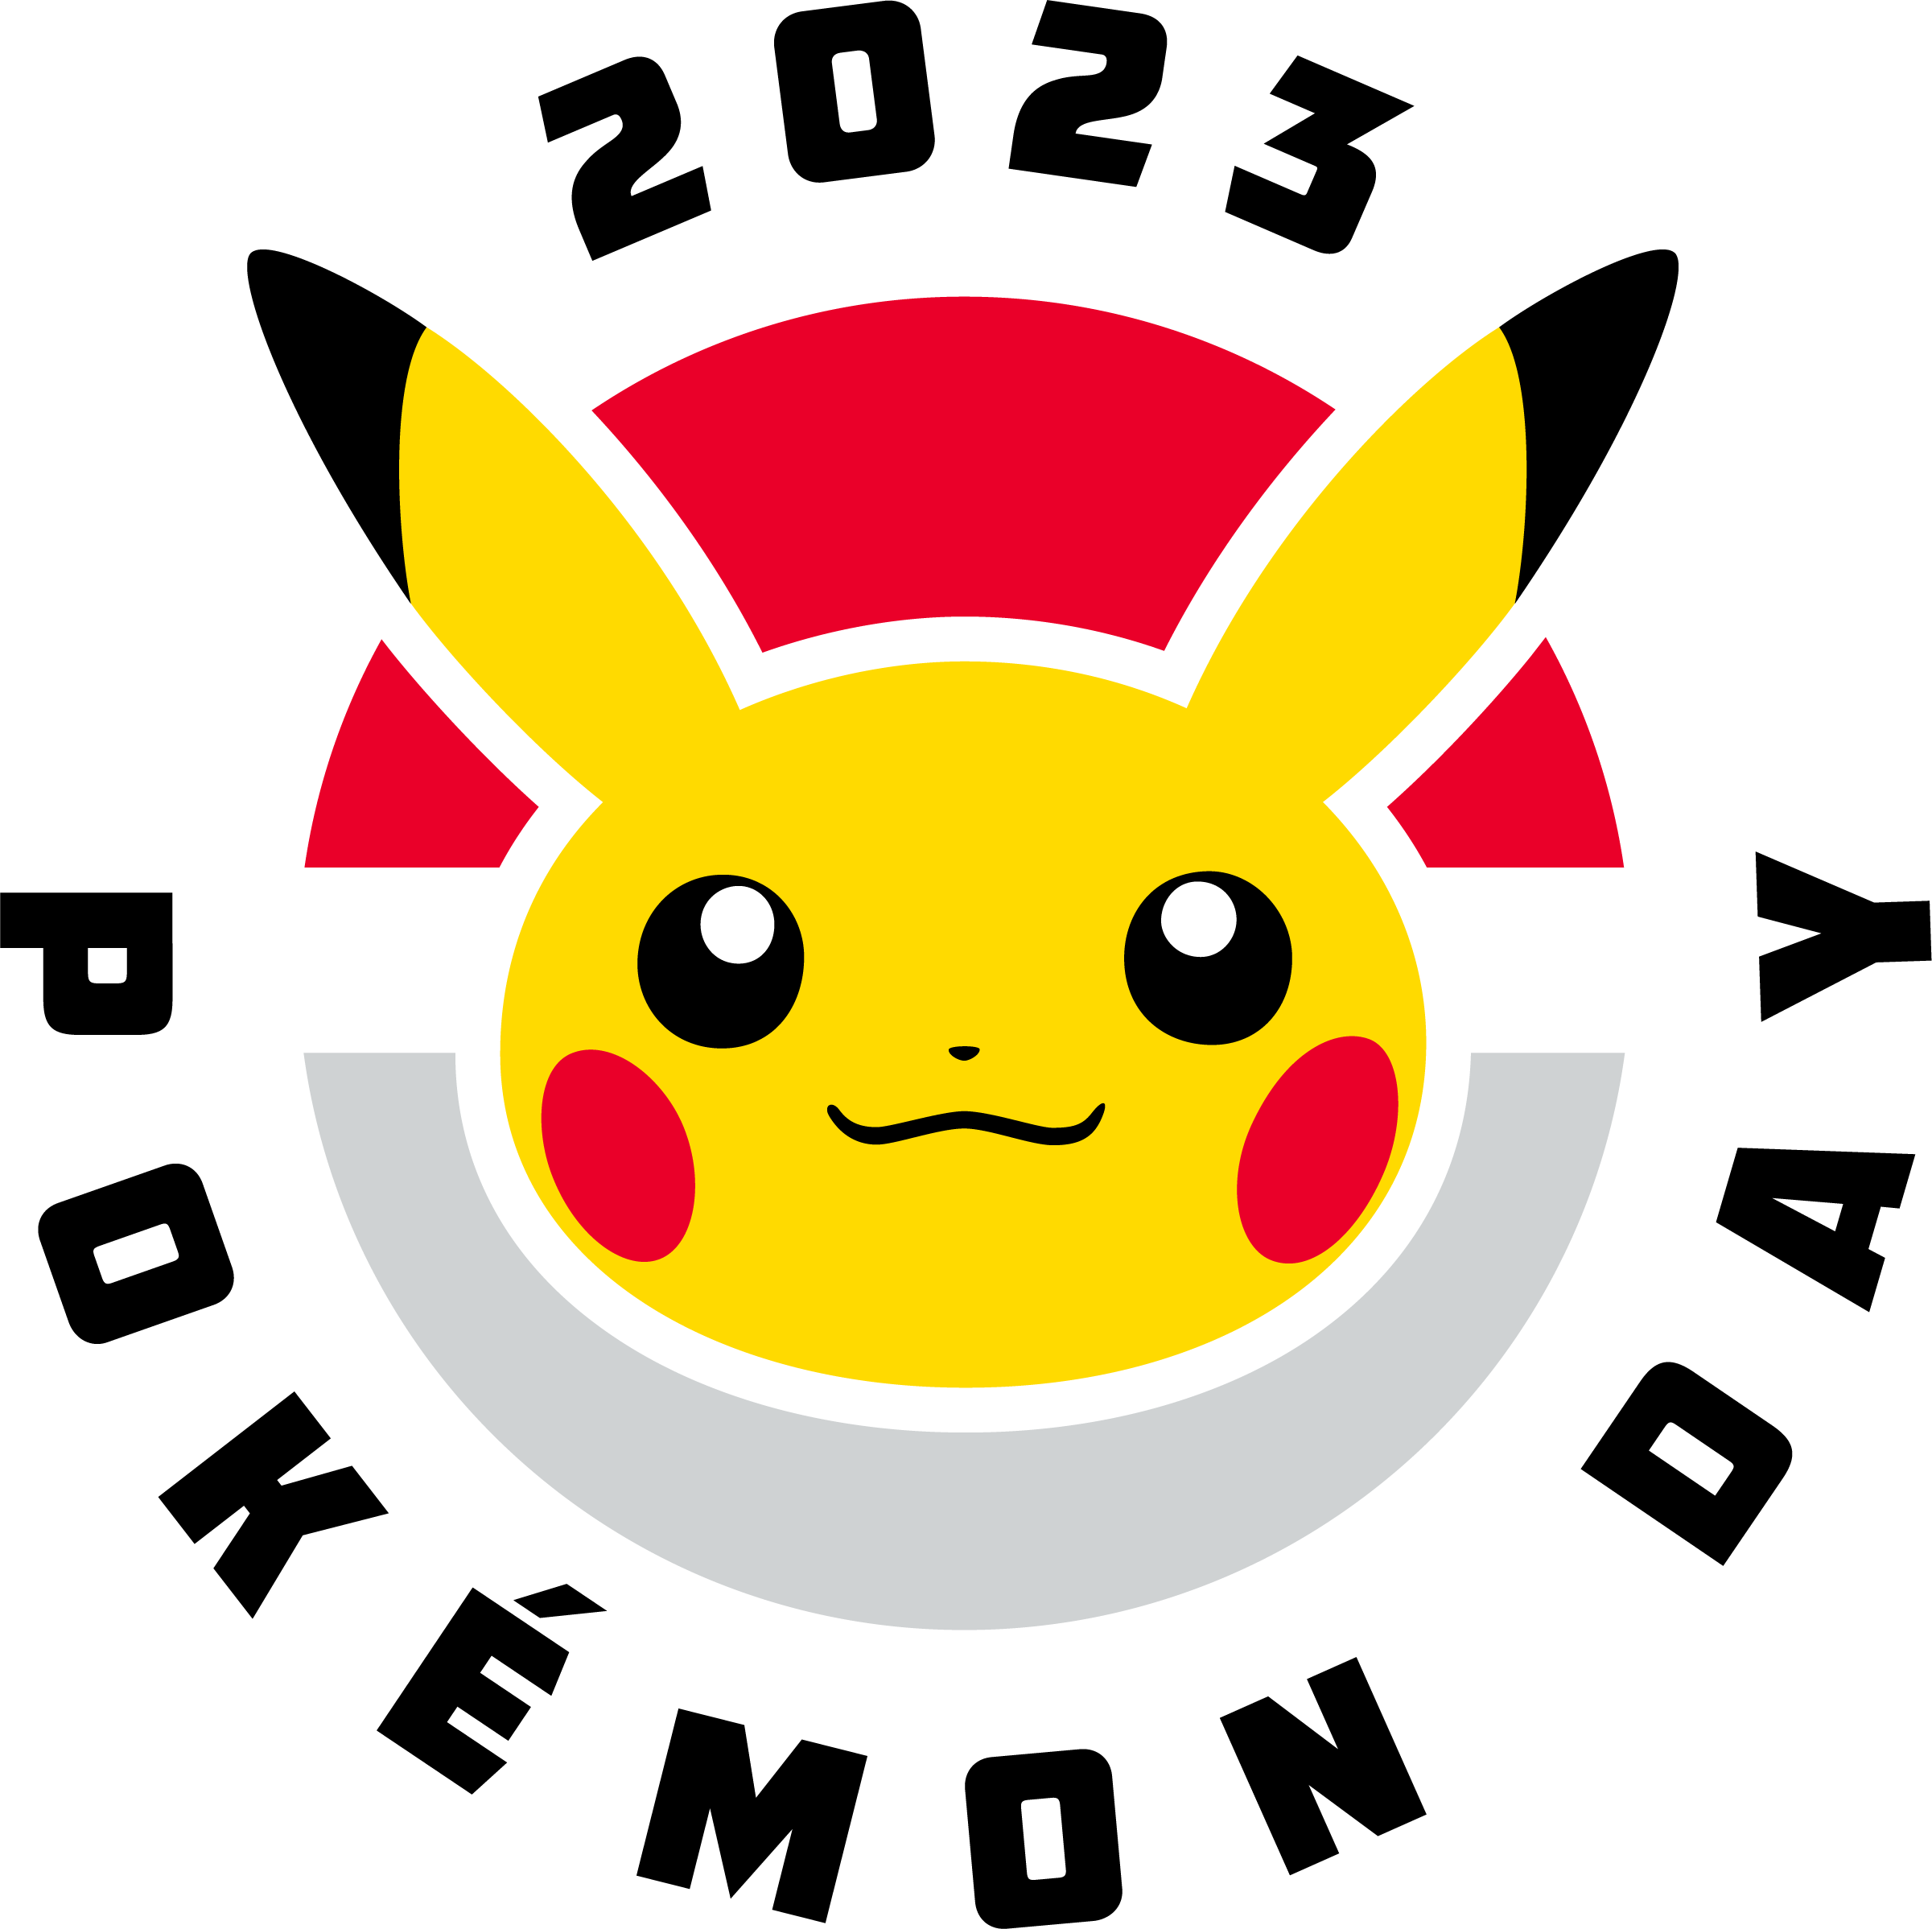 Pokémon Day 2023 Pokémon Together Campaign